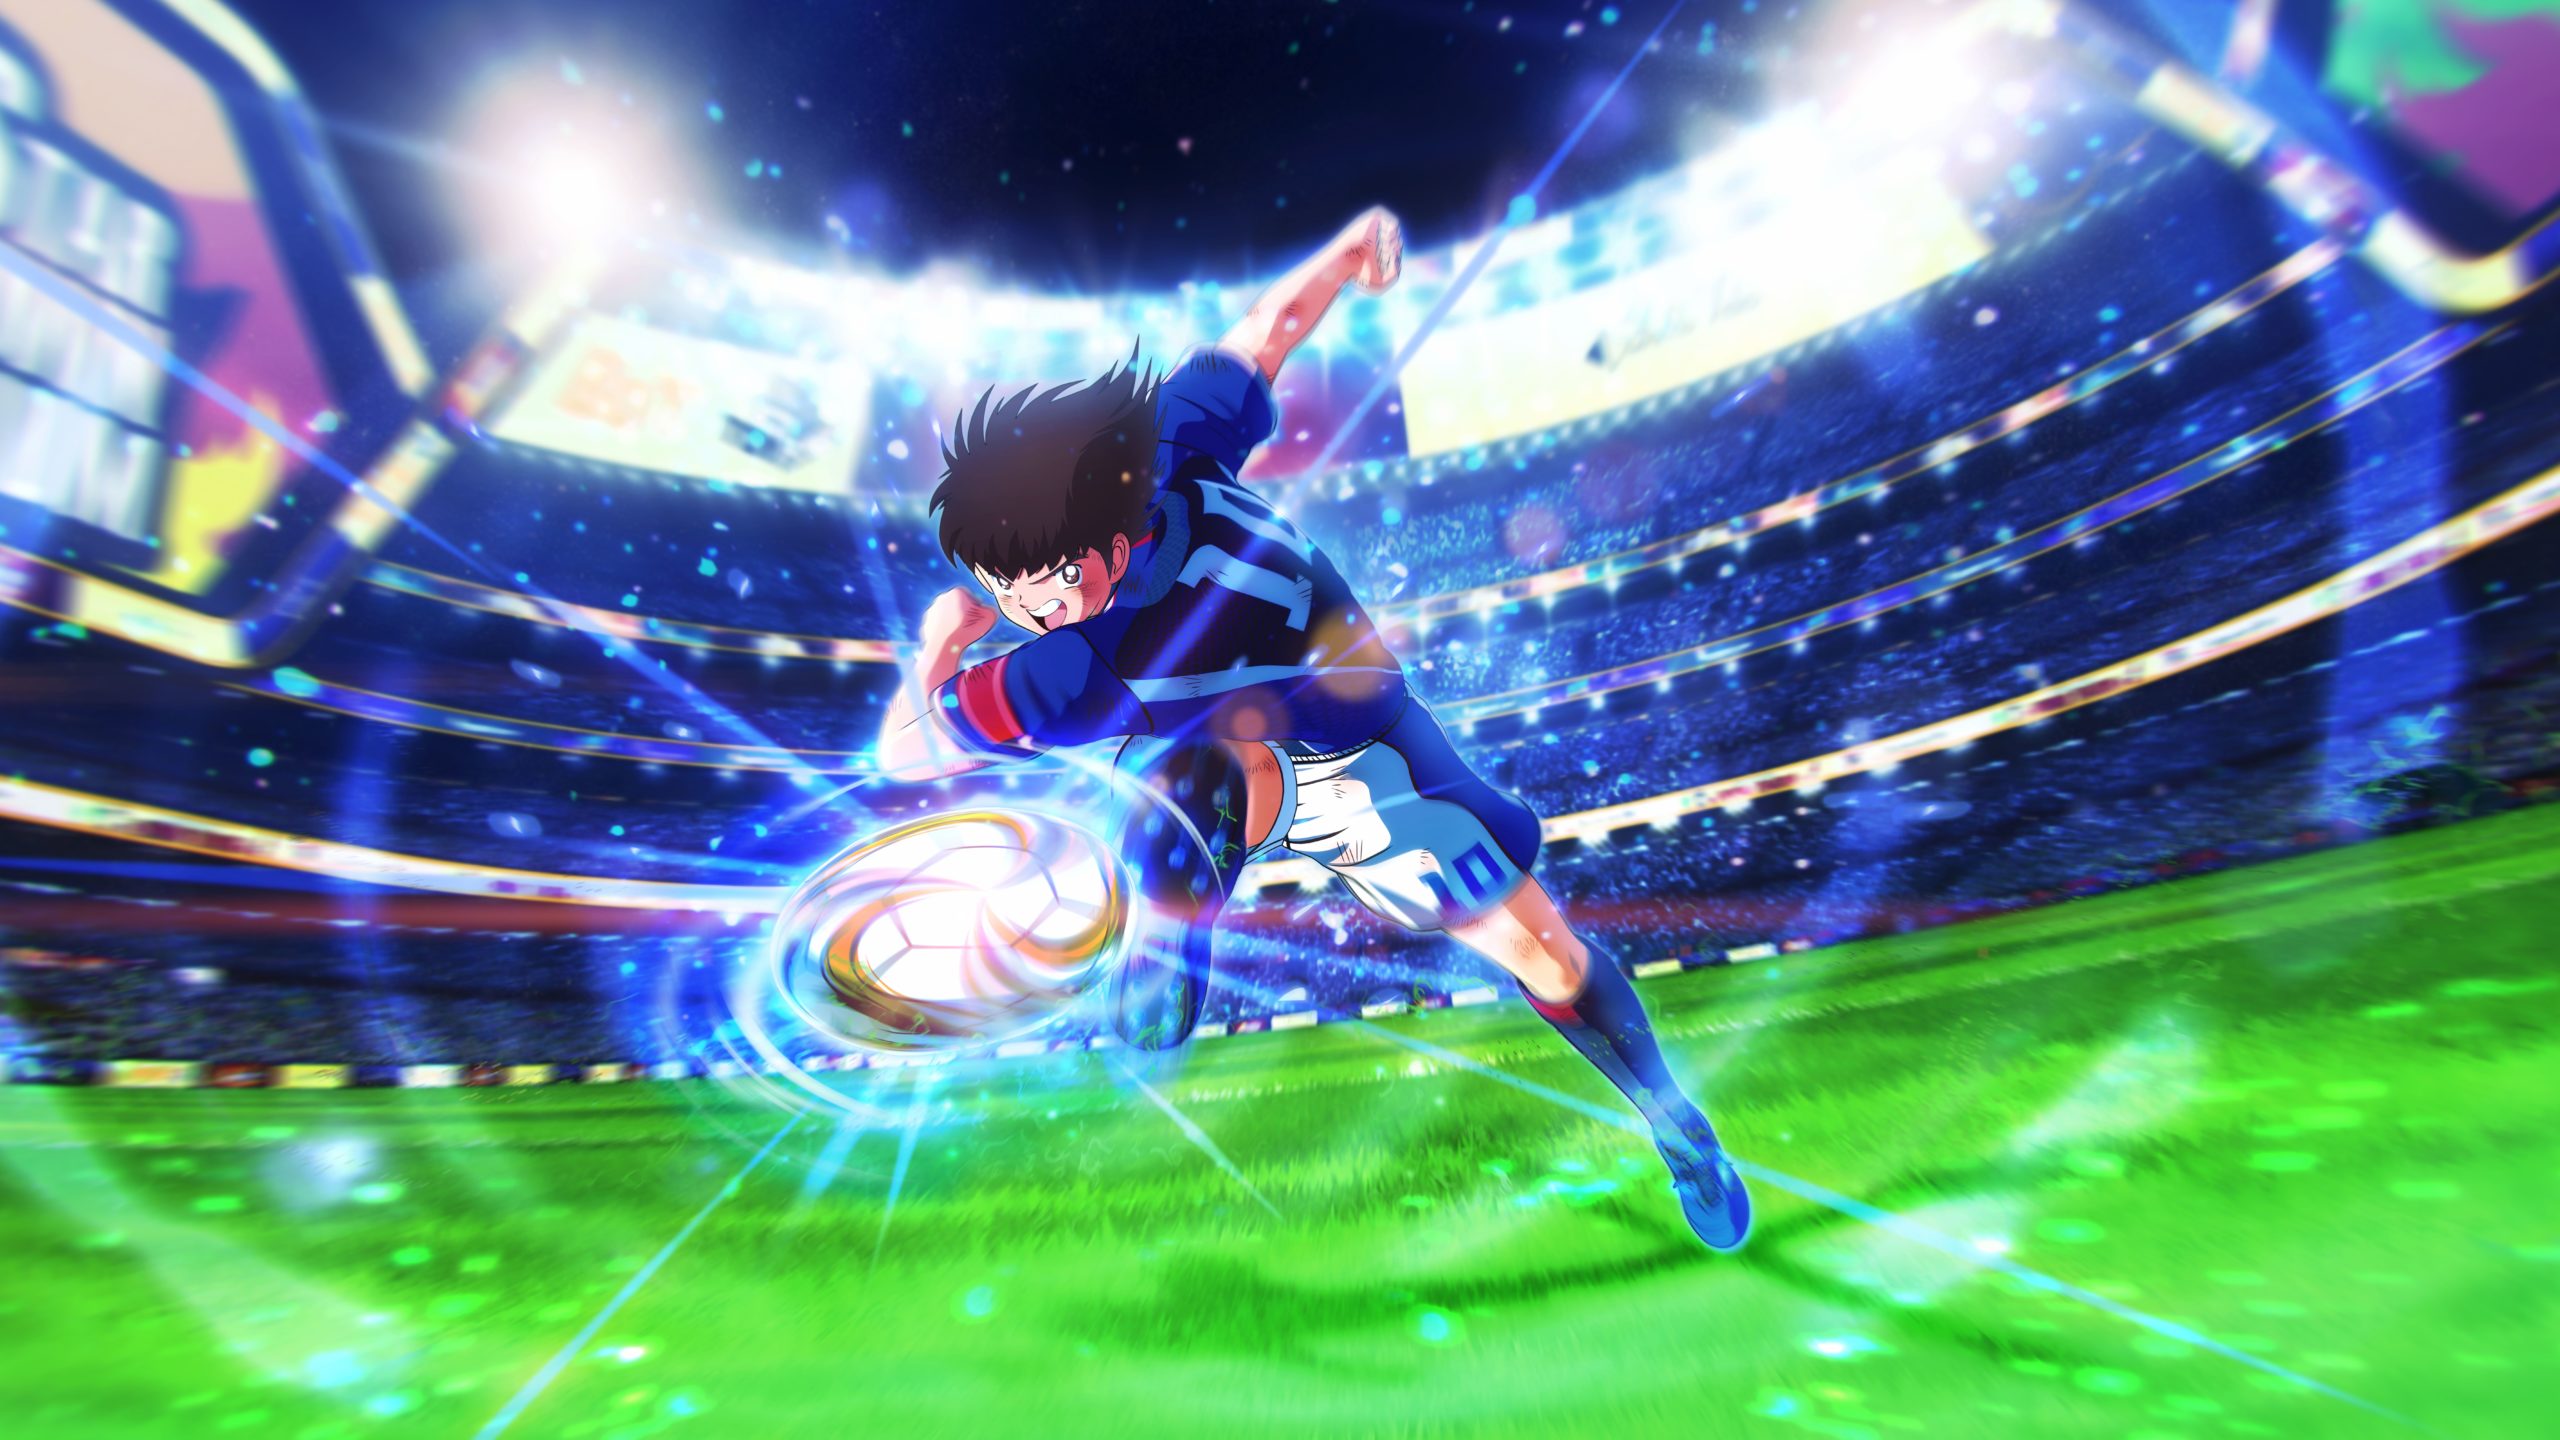 Descargar fondos de escritorio de Captain Tsubasa: Rise Of New Champions HD